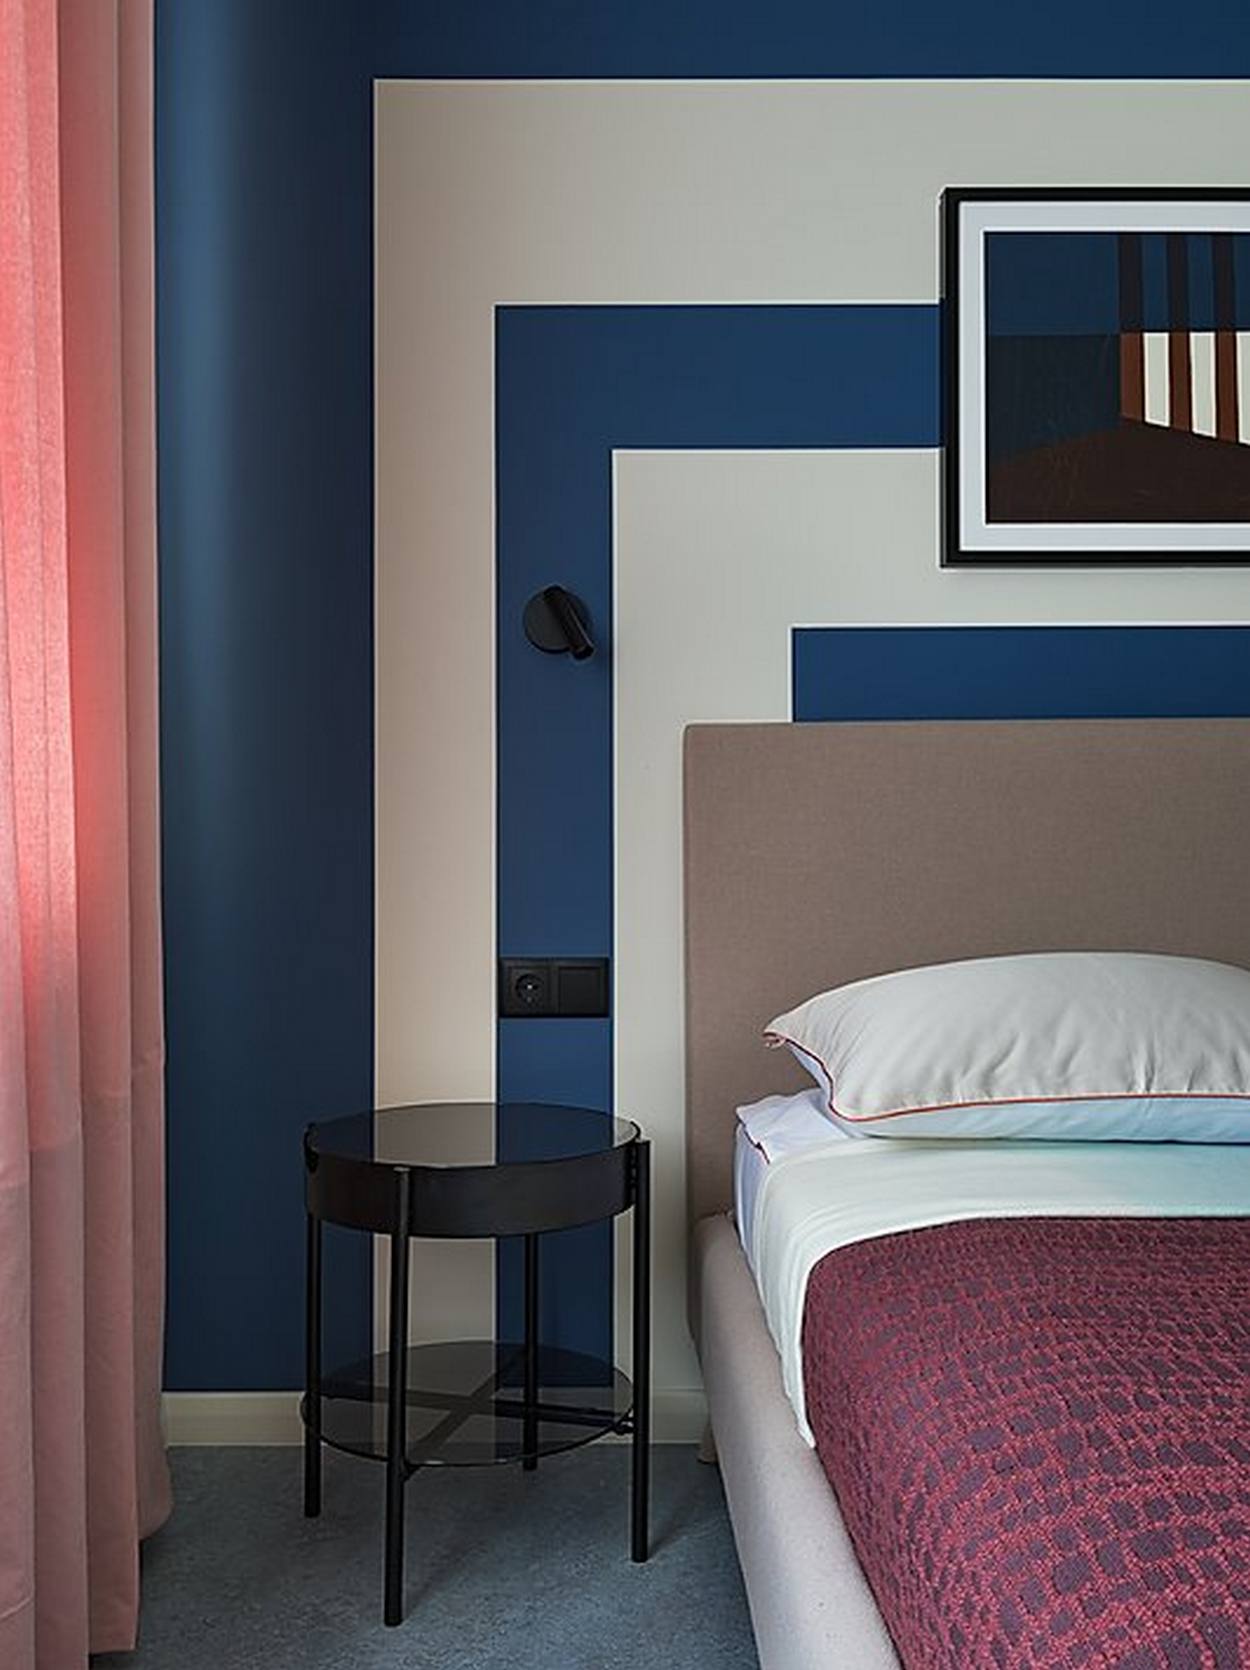 Bức tường đầu giường phòng ngủ được trang trí bằng những khối hình học hình vuông cân xứng, xen kẽ 2 gam màu trắng và xanh lam đậm, vừa để tạo sự khác biệt với các khu vực còn lại vừa tạo cảm giác yên bình, tĩnh tại cho không gian thư giãn.